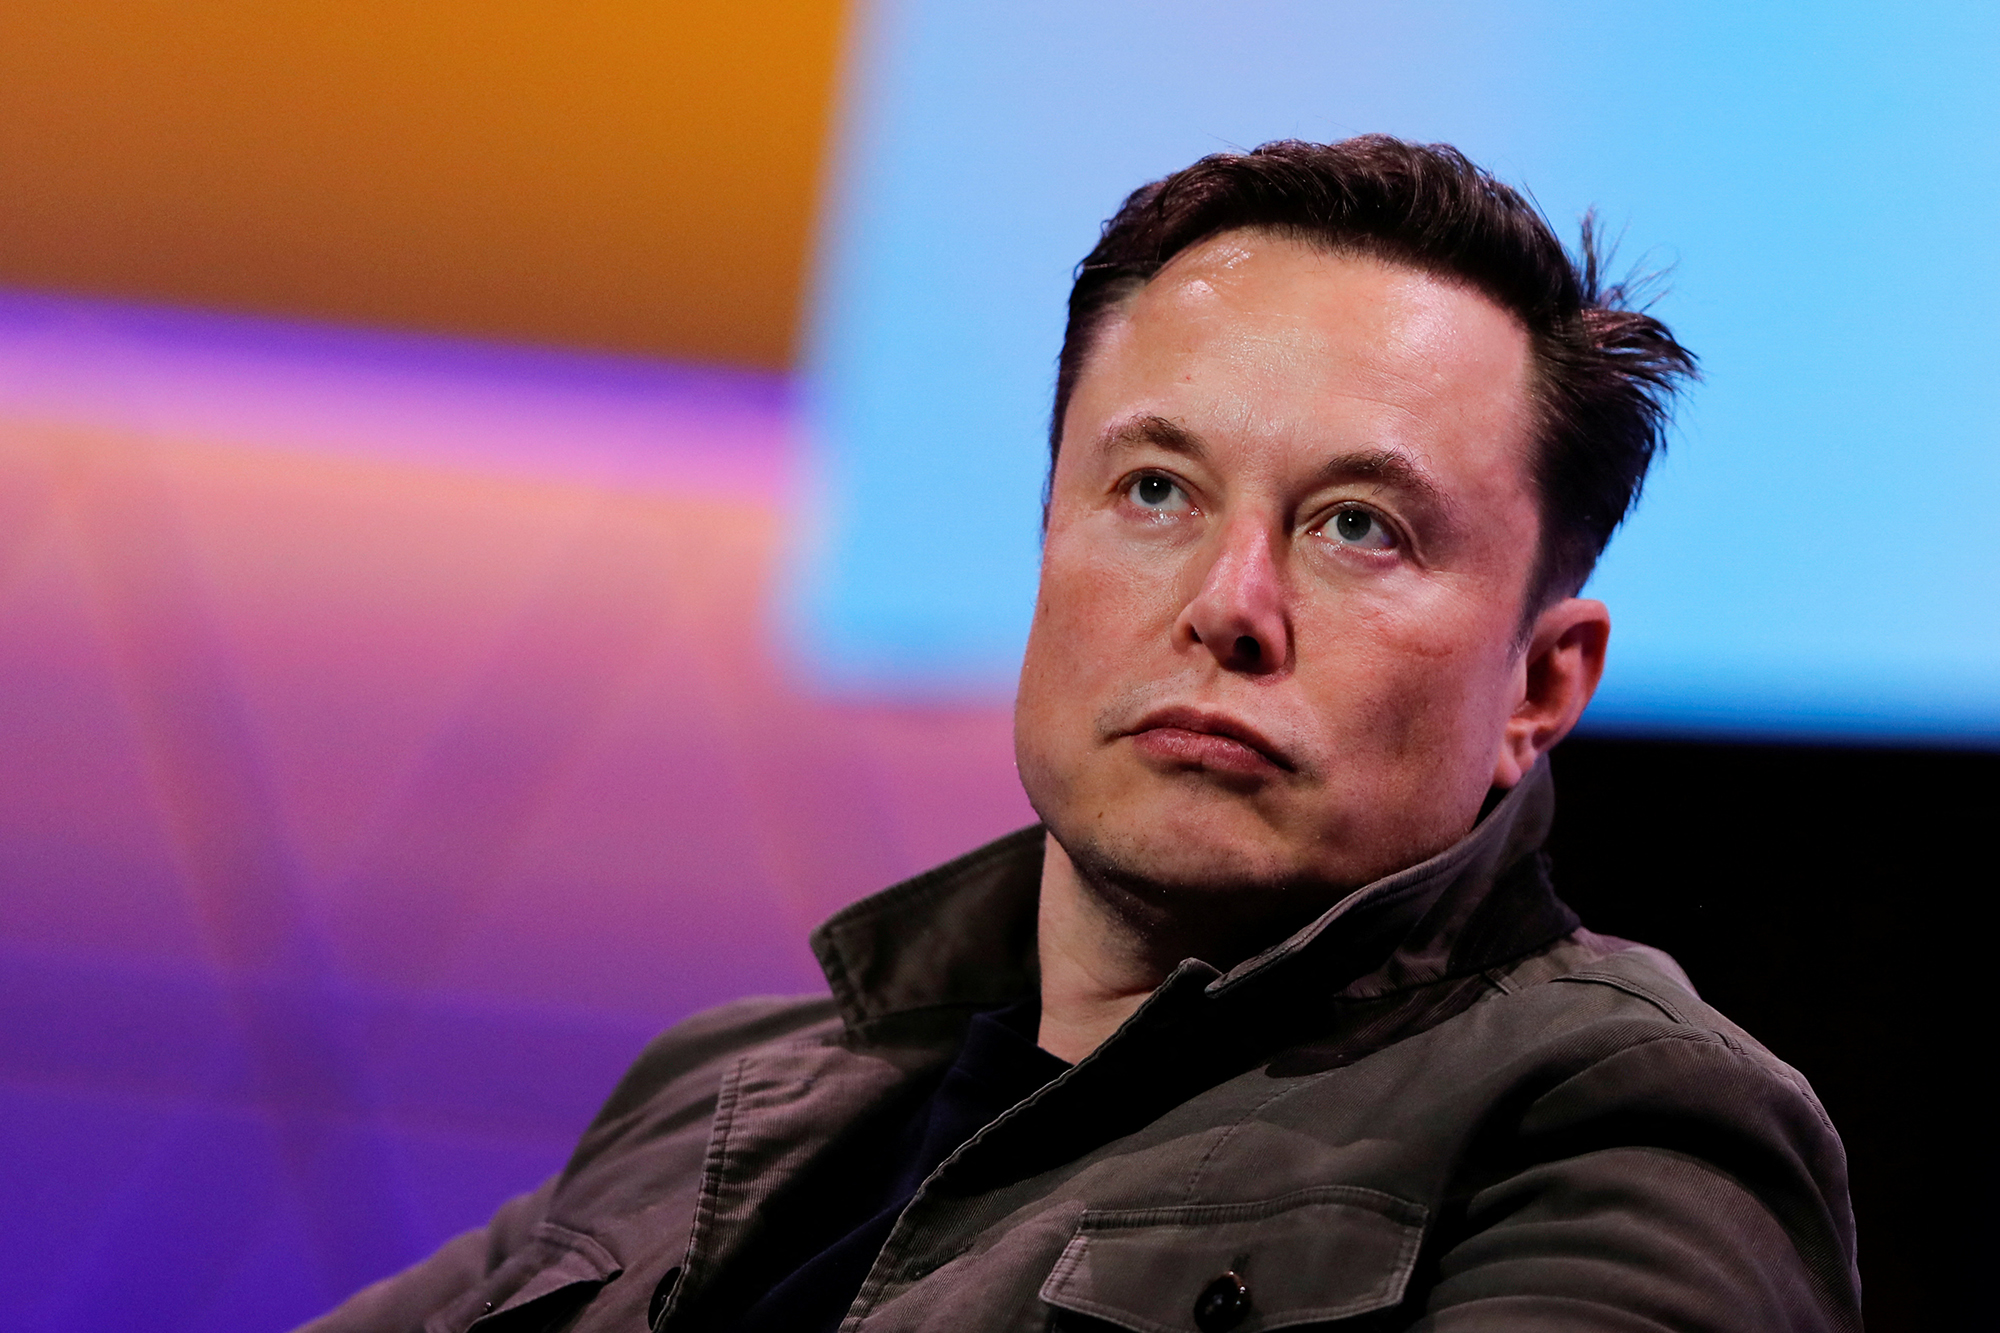 Gest incredibil! Elon Musk a activat sateliții de internet Starlink de la SpaceX peste Ucraina, la cererea vicepremierului